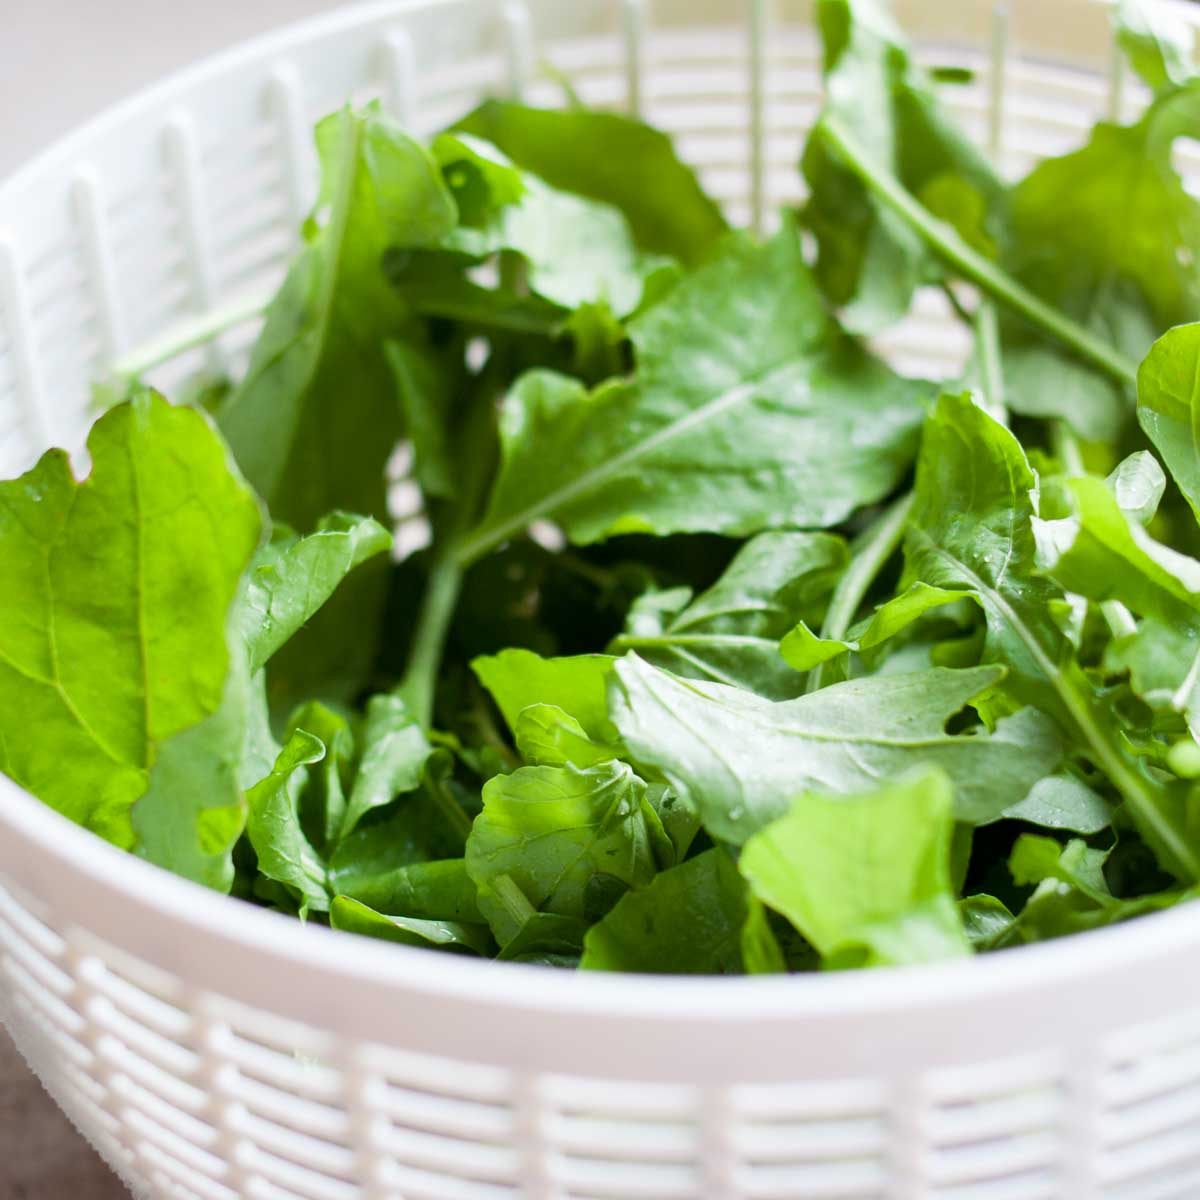 A salad spinner basket holds freshly washed lettuce leaves.